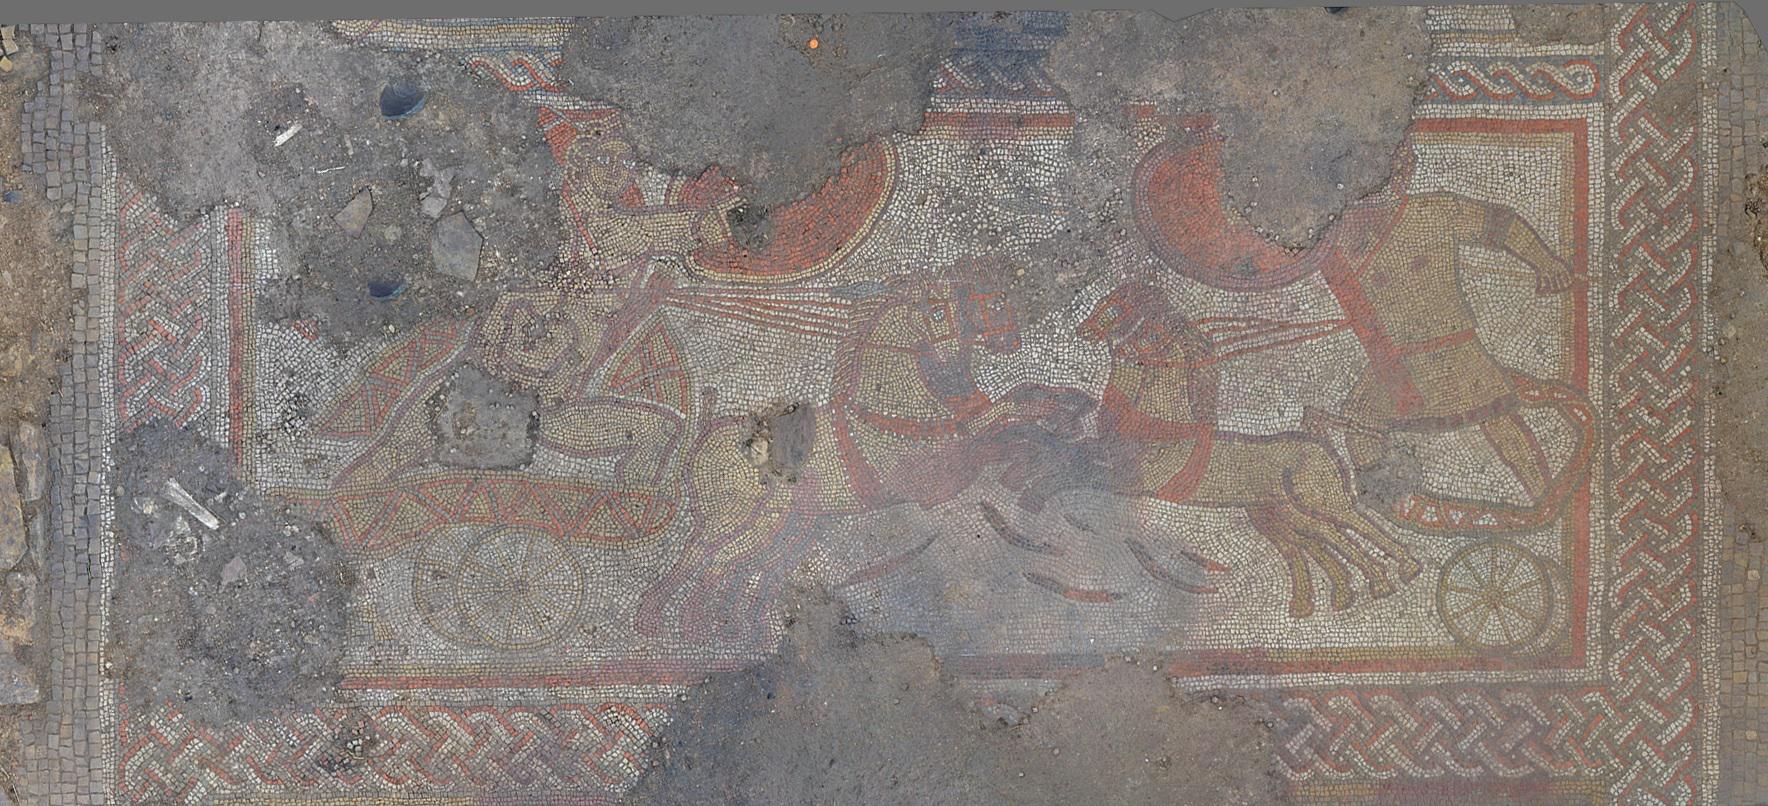 Raro mosaico romano es descubierto bajo un campo de cultivo en Inglaterra. Noticias en tiempo real